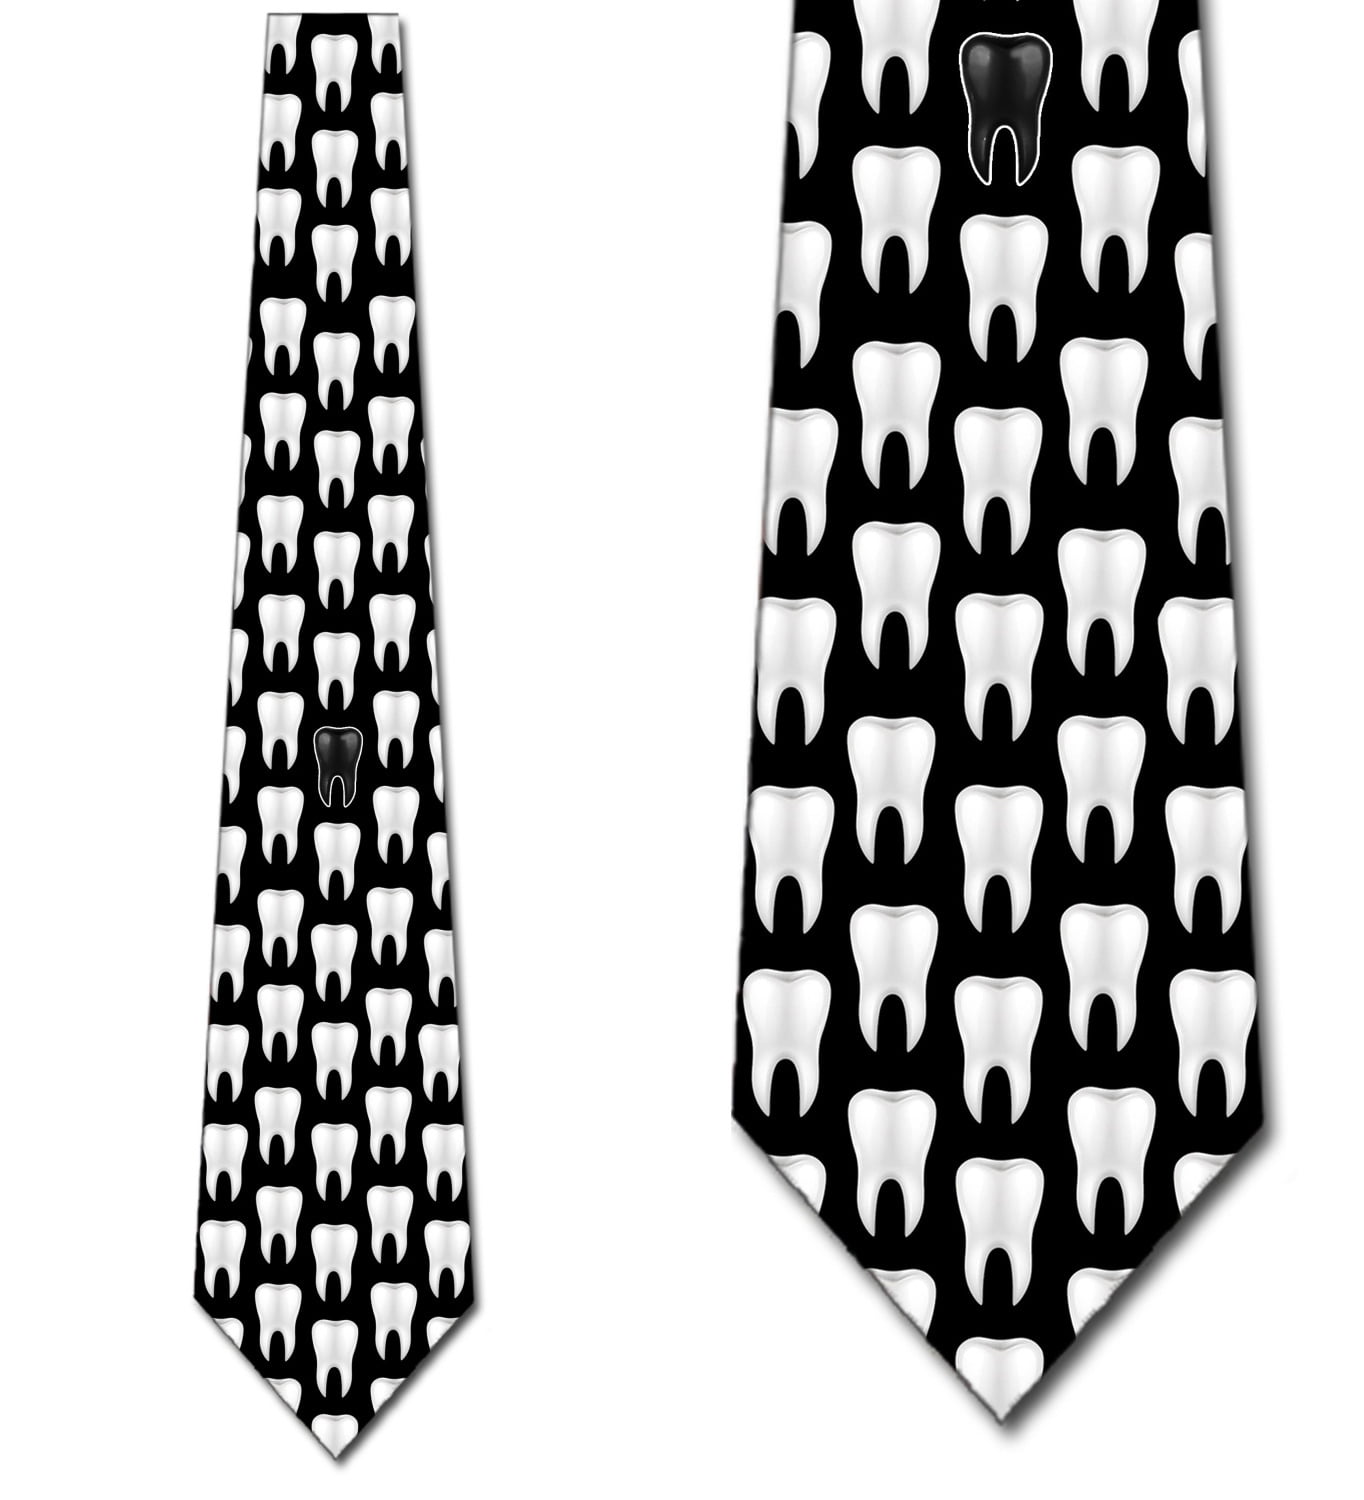 Punisher Skinny Tie Necktie